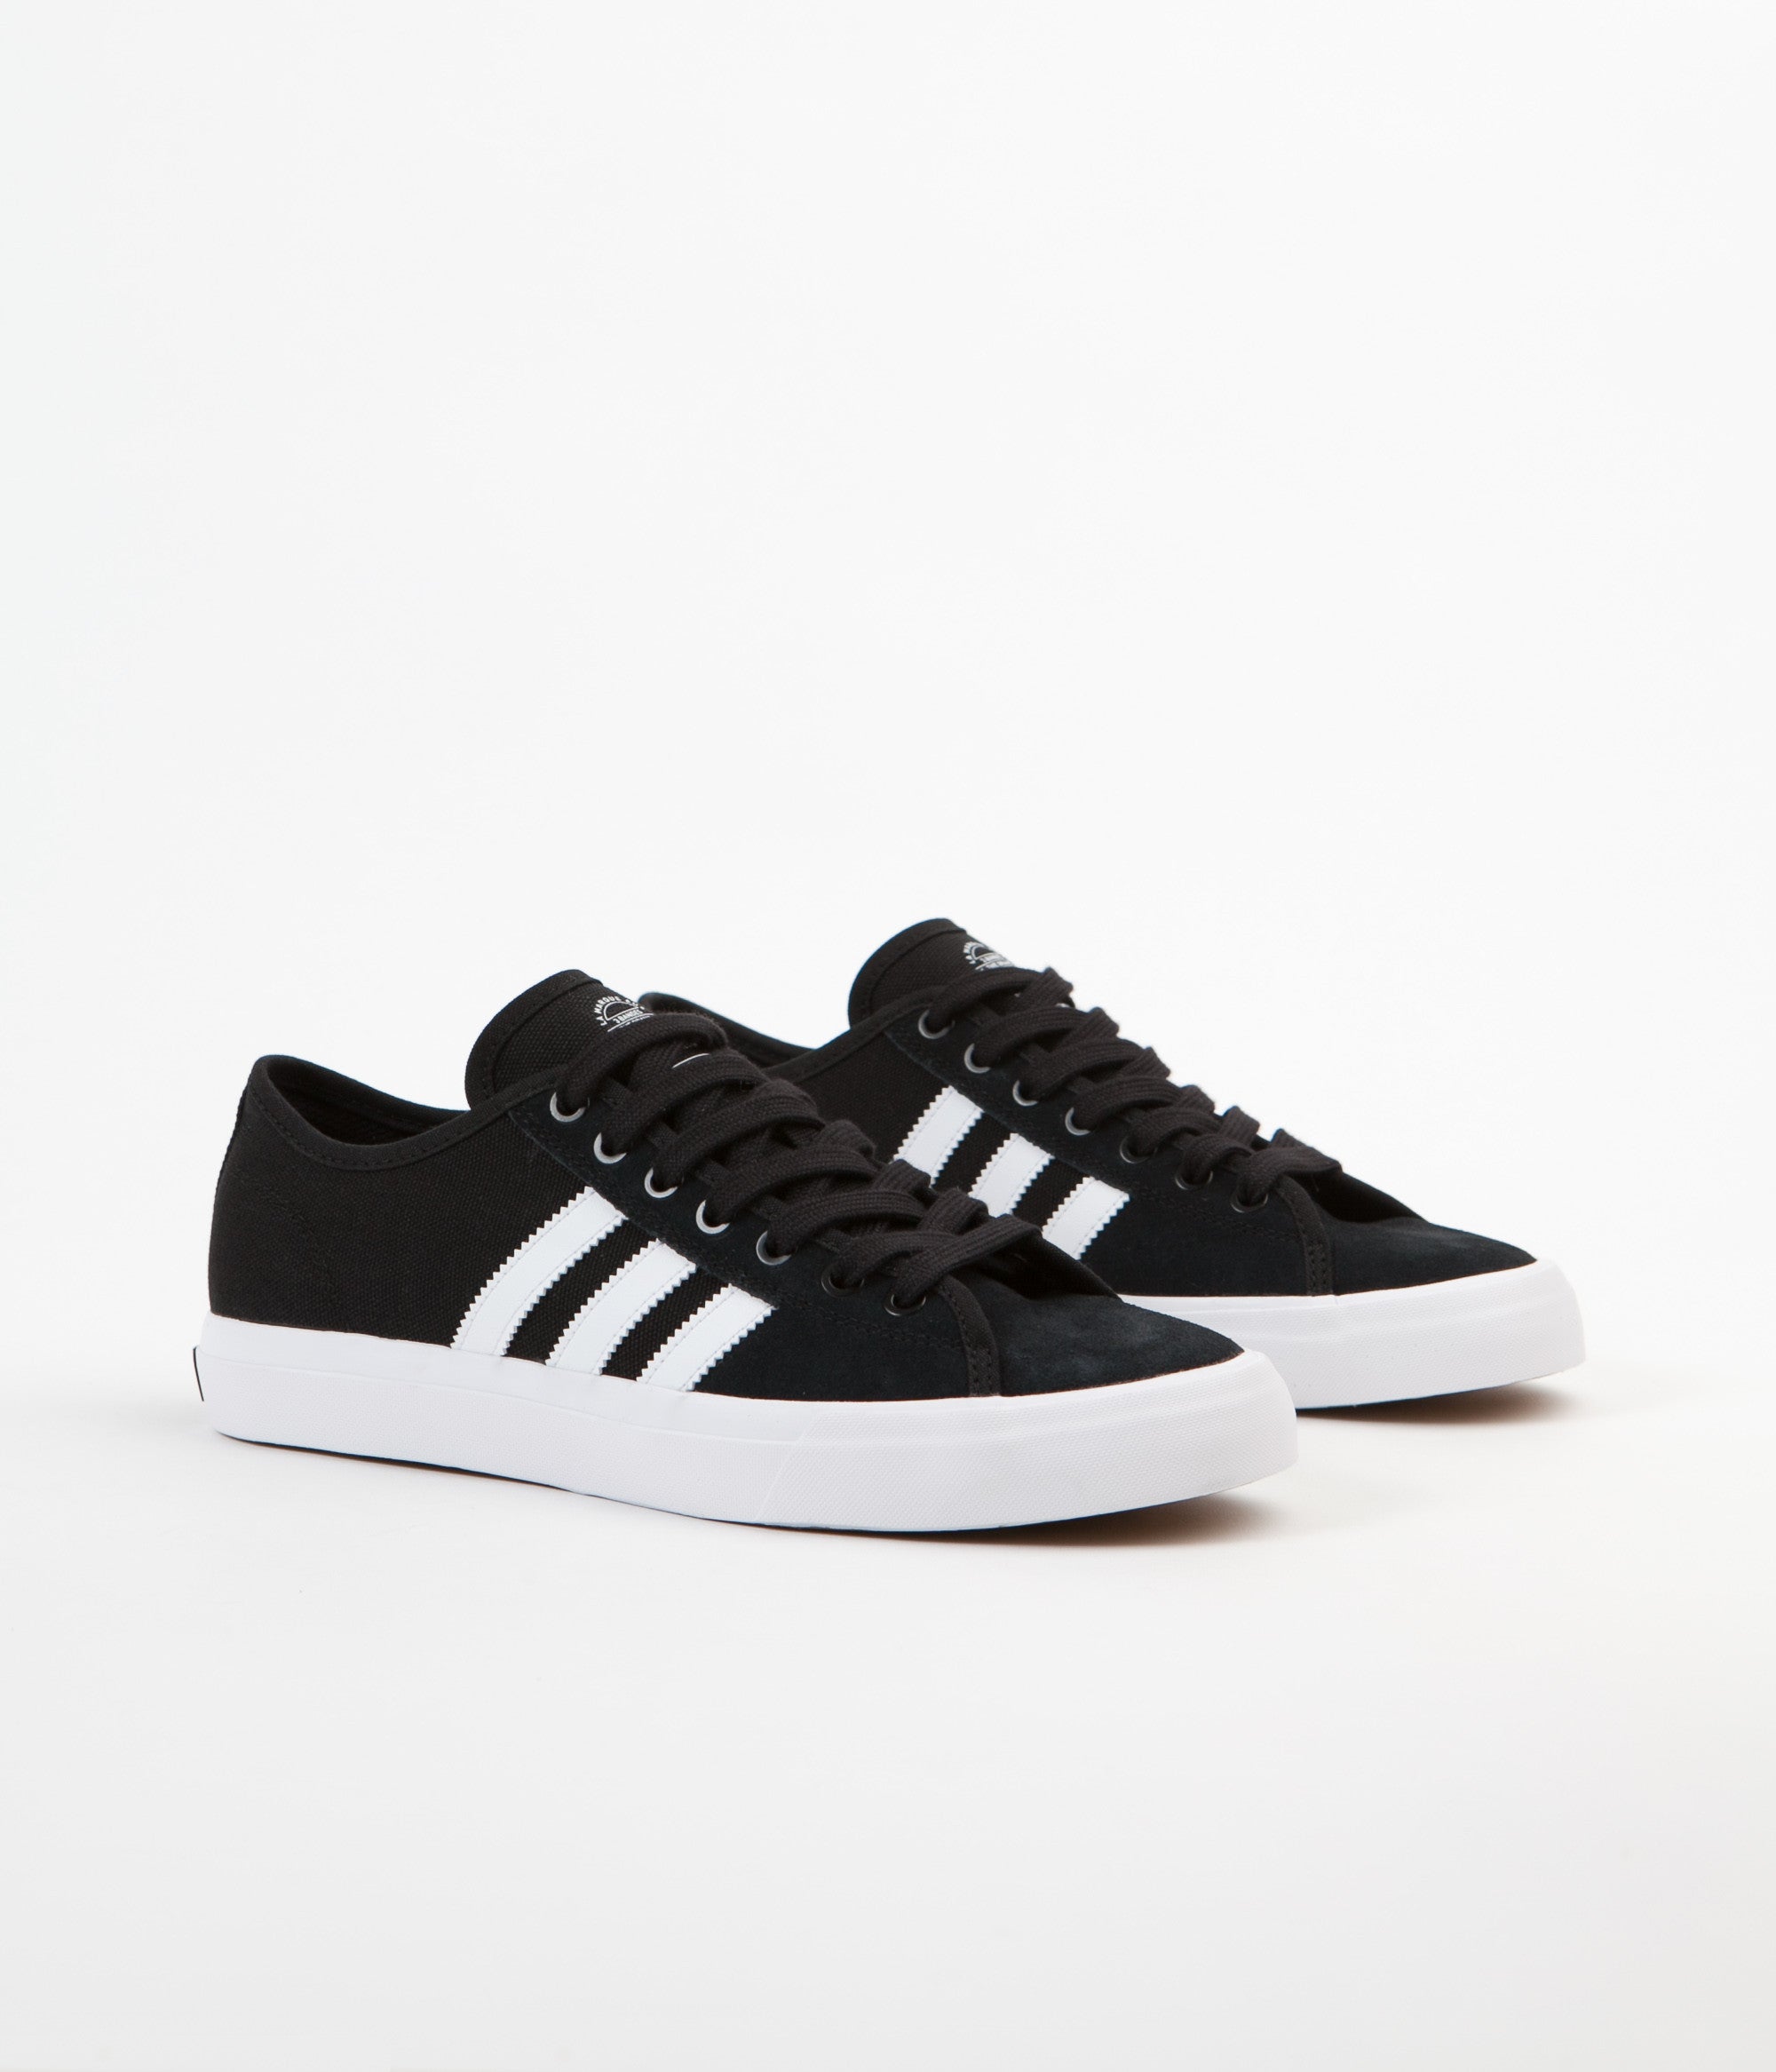 Adidas Matchcourt RX Shoes - Core Black / White / Core Black | Flatspot